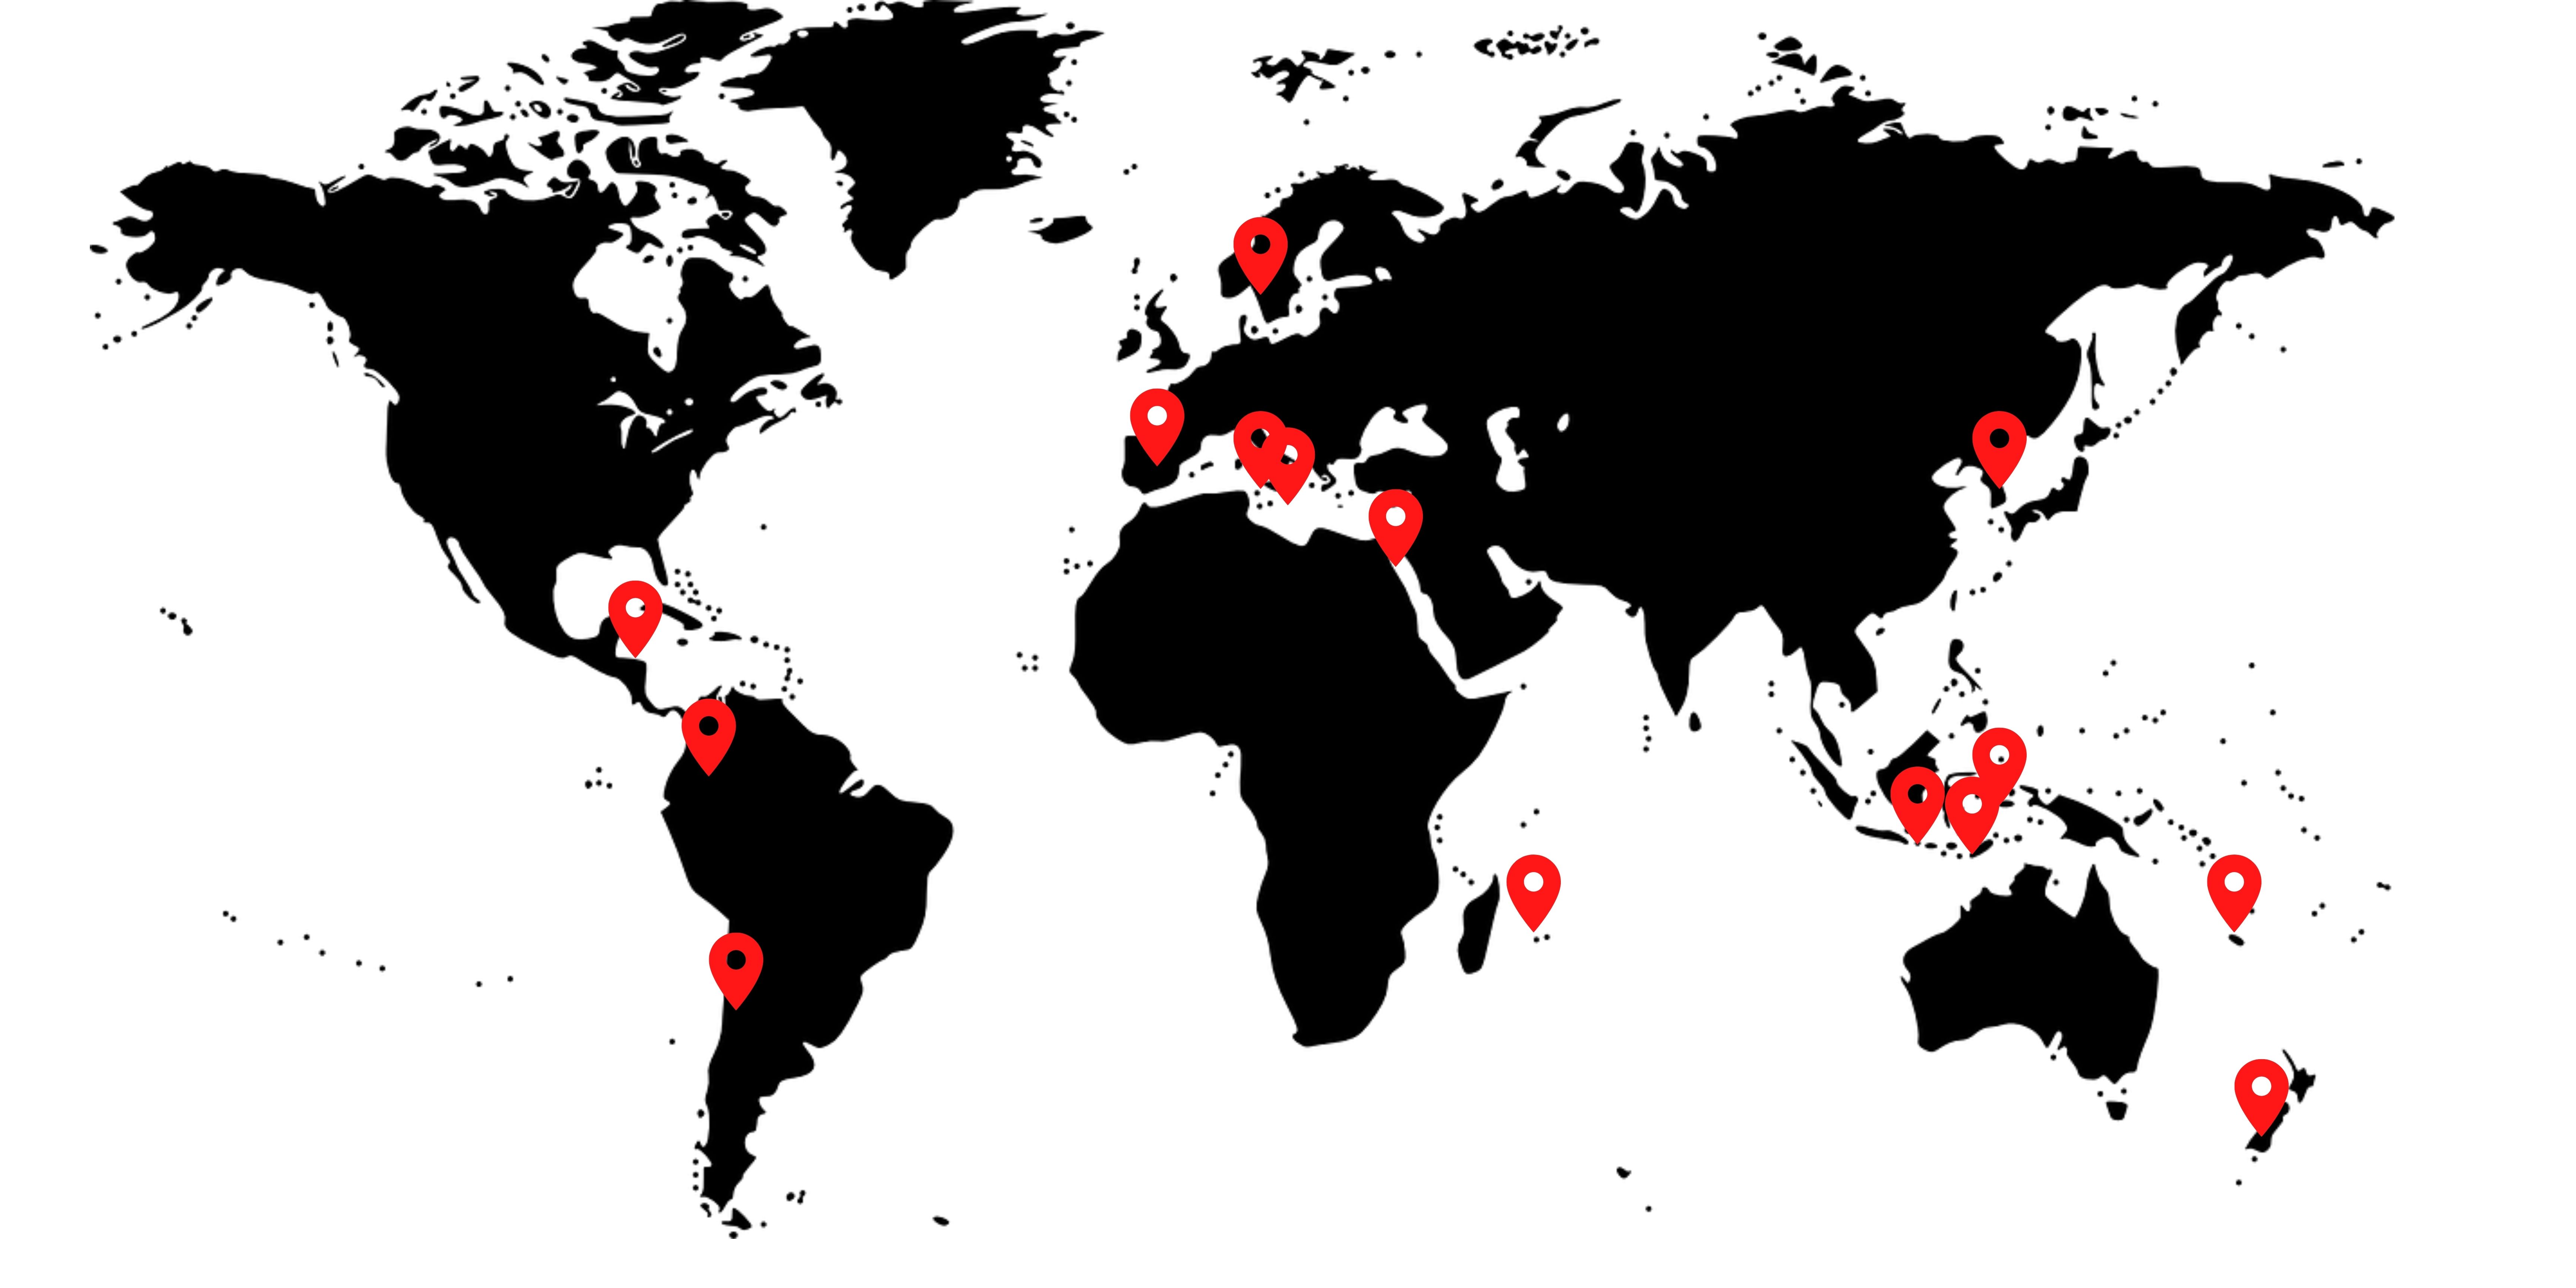 Maxlux S around the world